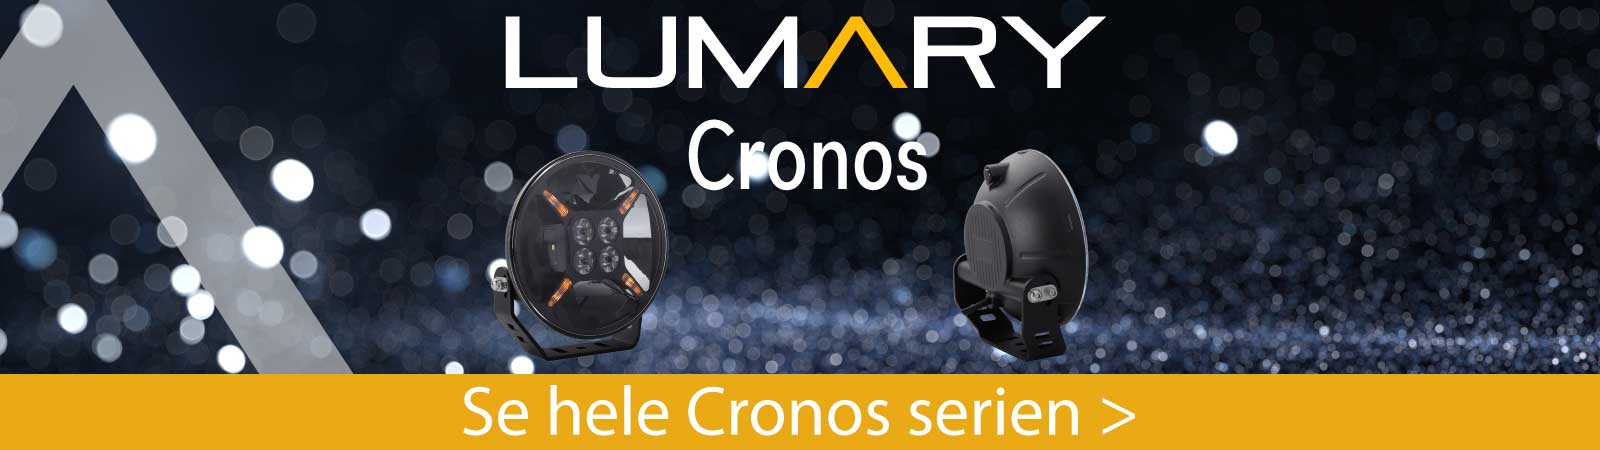 Lumary Cronos ekstralys